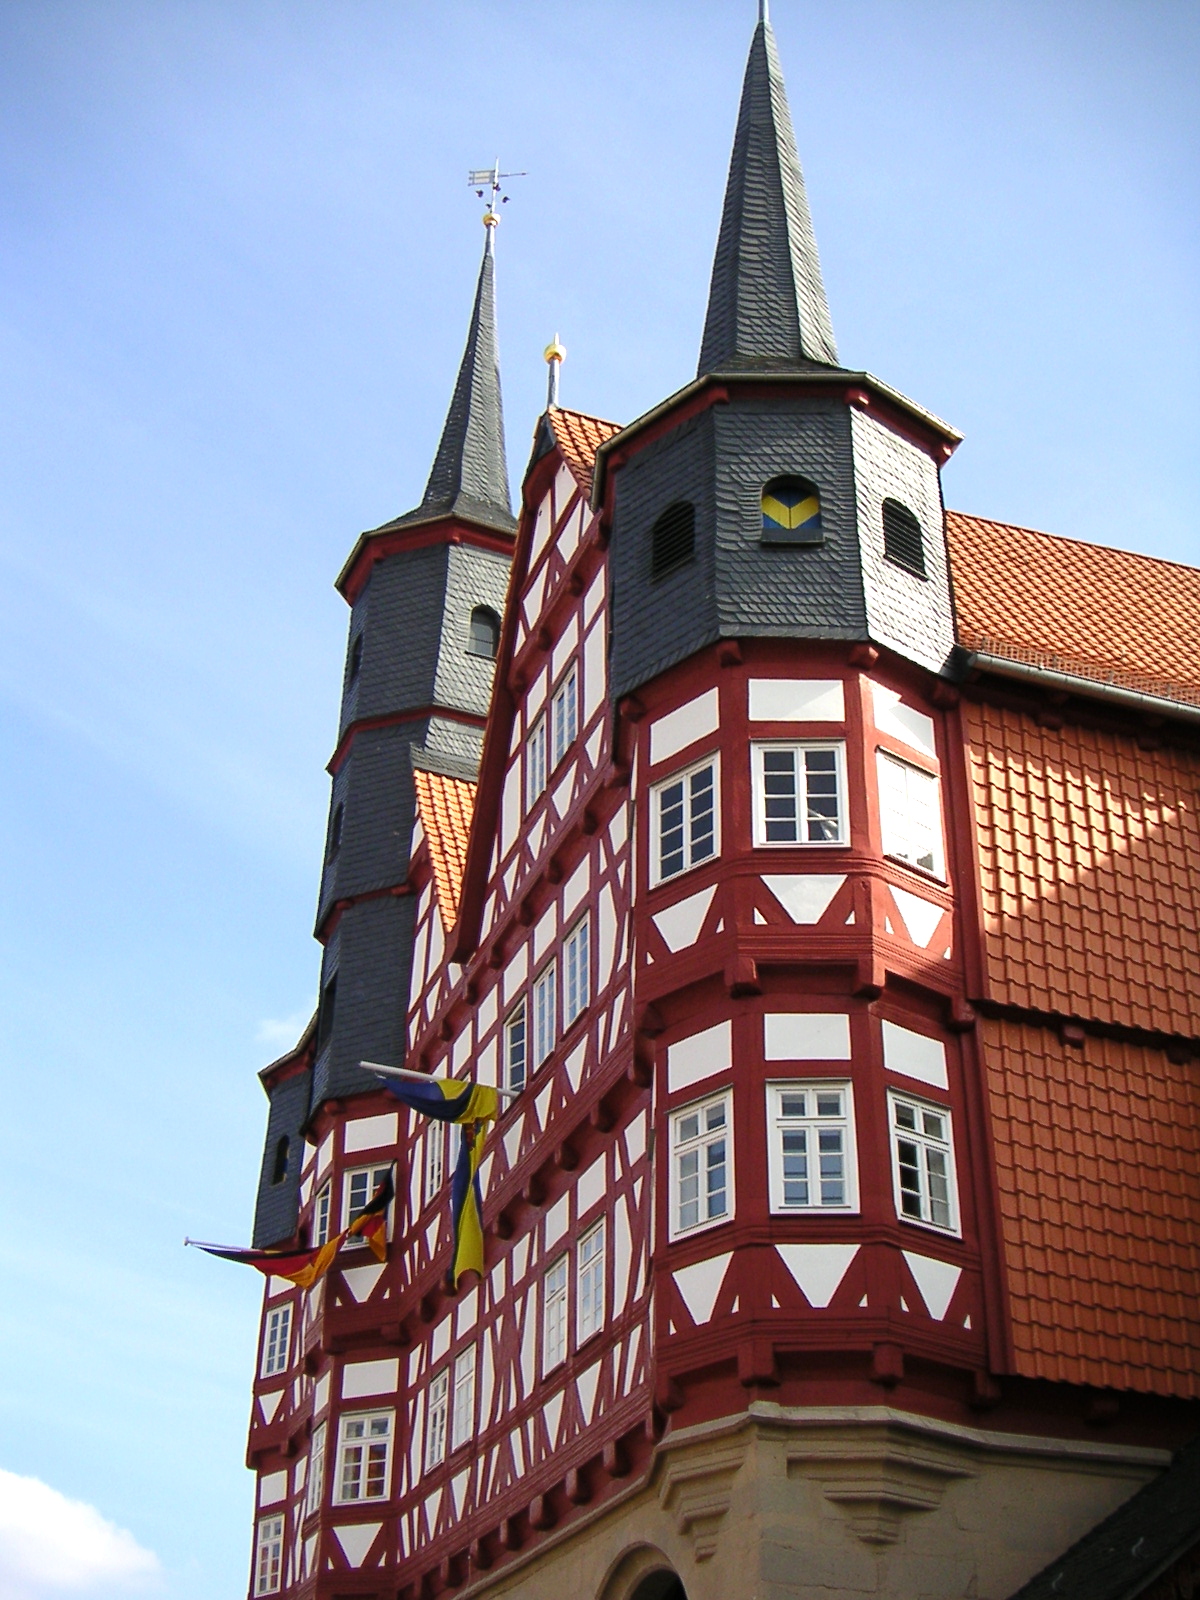 Das Duderstädter Rathaus in der Marktstr. 66